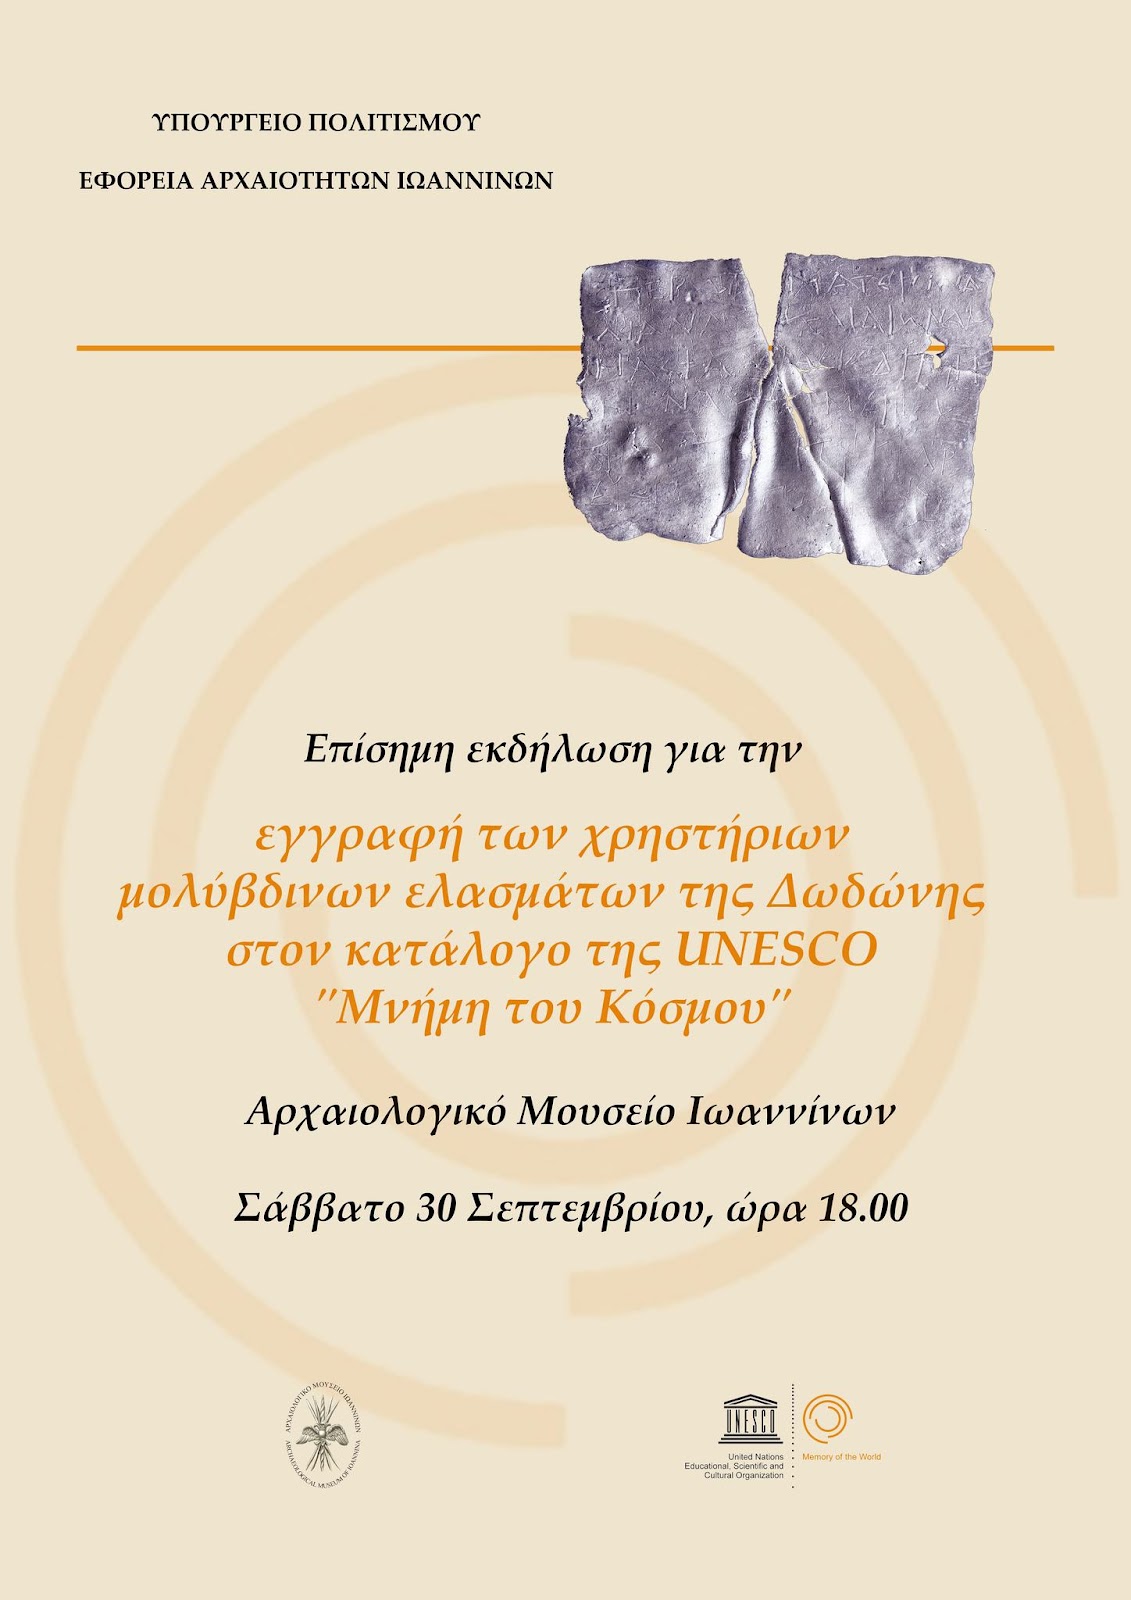 Επίσημη εκδήλωση για την εγγραφή των χρηστήριων ελασμάτων της Δωδώνης στον Διεθνή Κατάλογο της UNESCO «Μνήμη του Κόσμου»